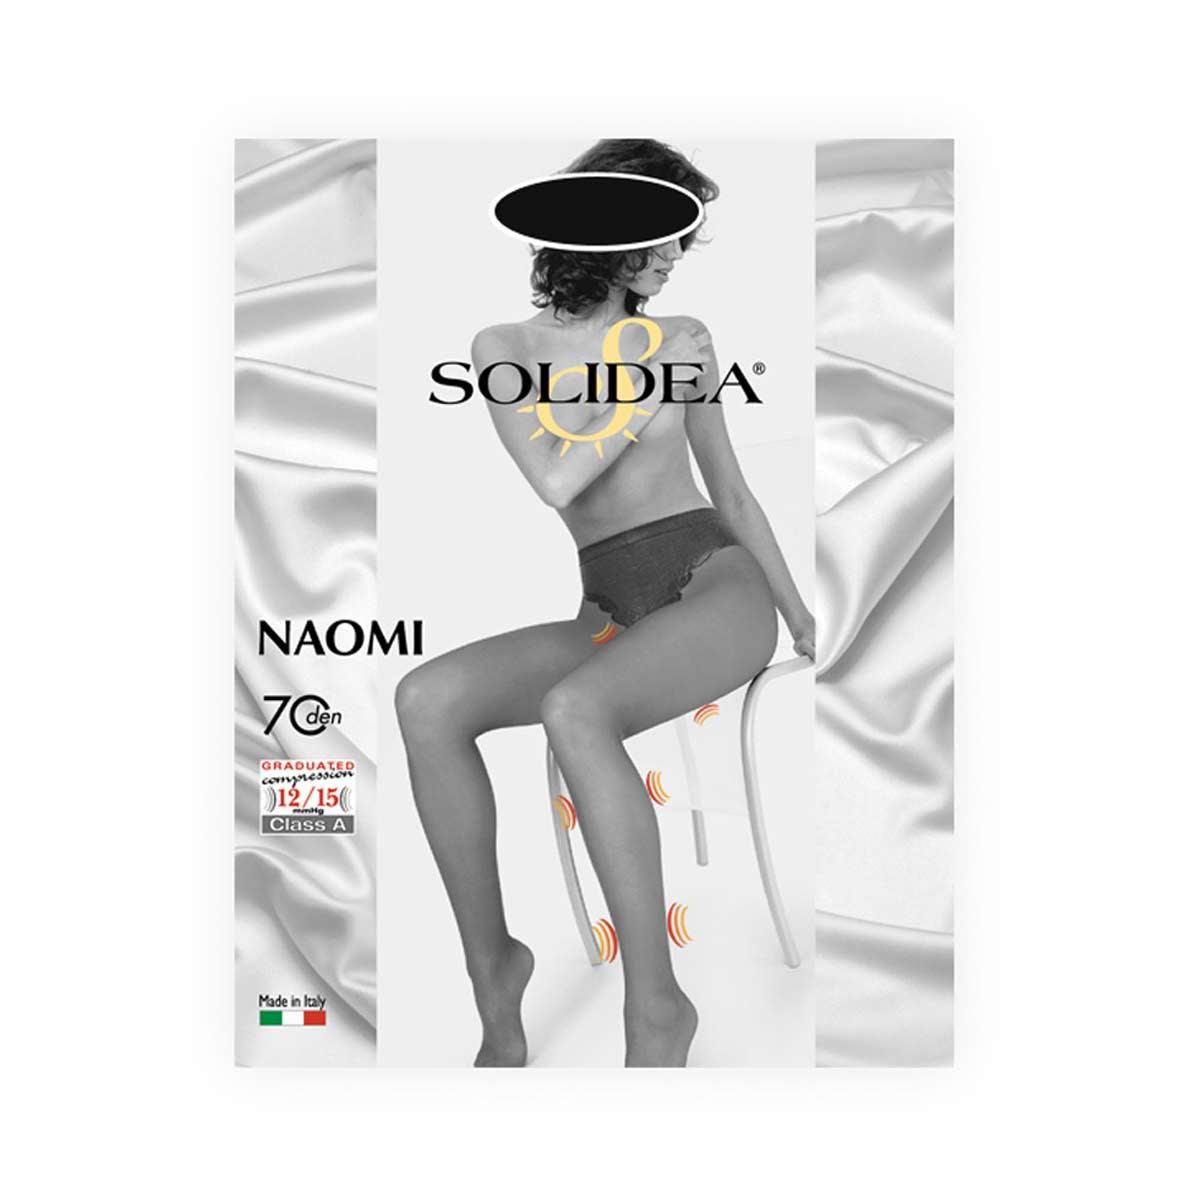 902246901 - Solidea Naomi 70 Collant Contenitivo Nero taglia 2 - 4705897_2.jpg